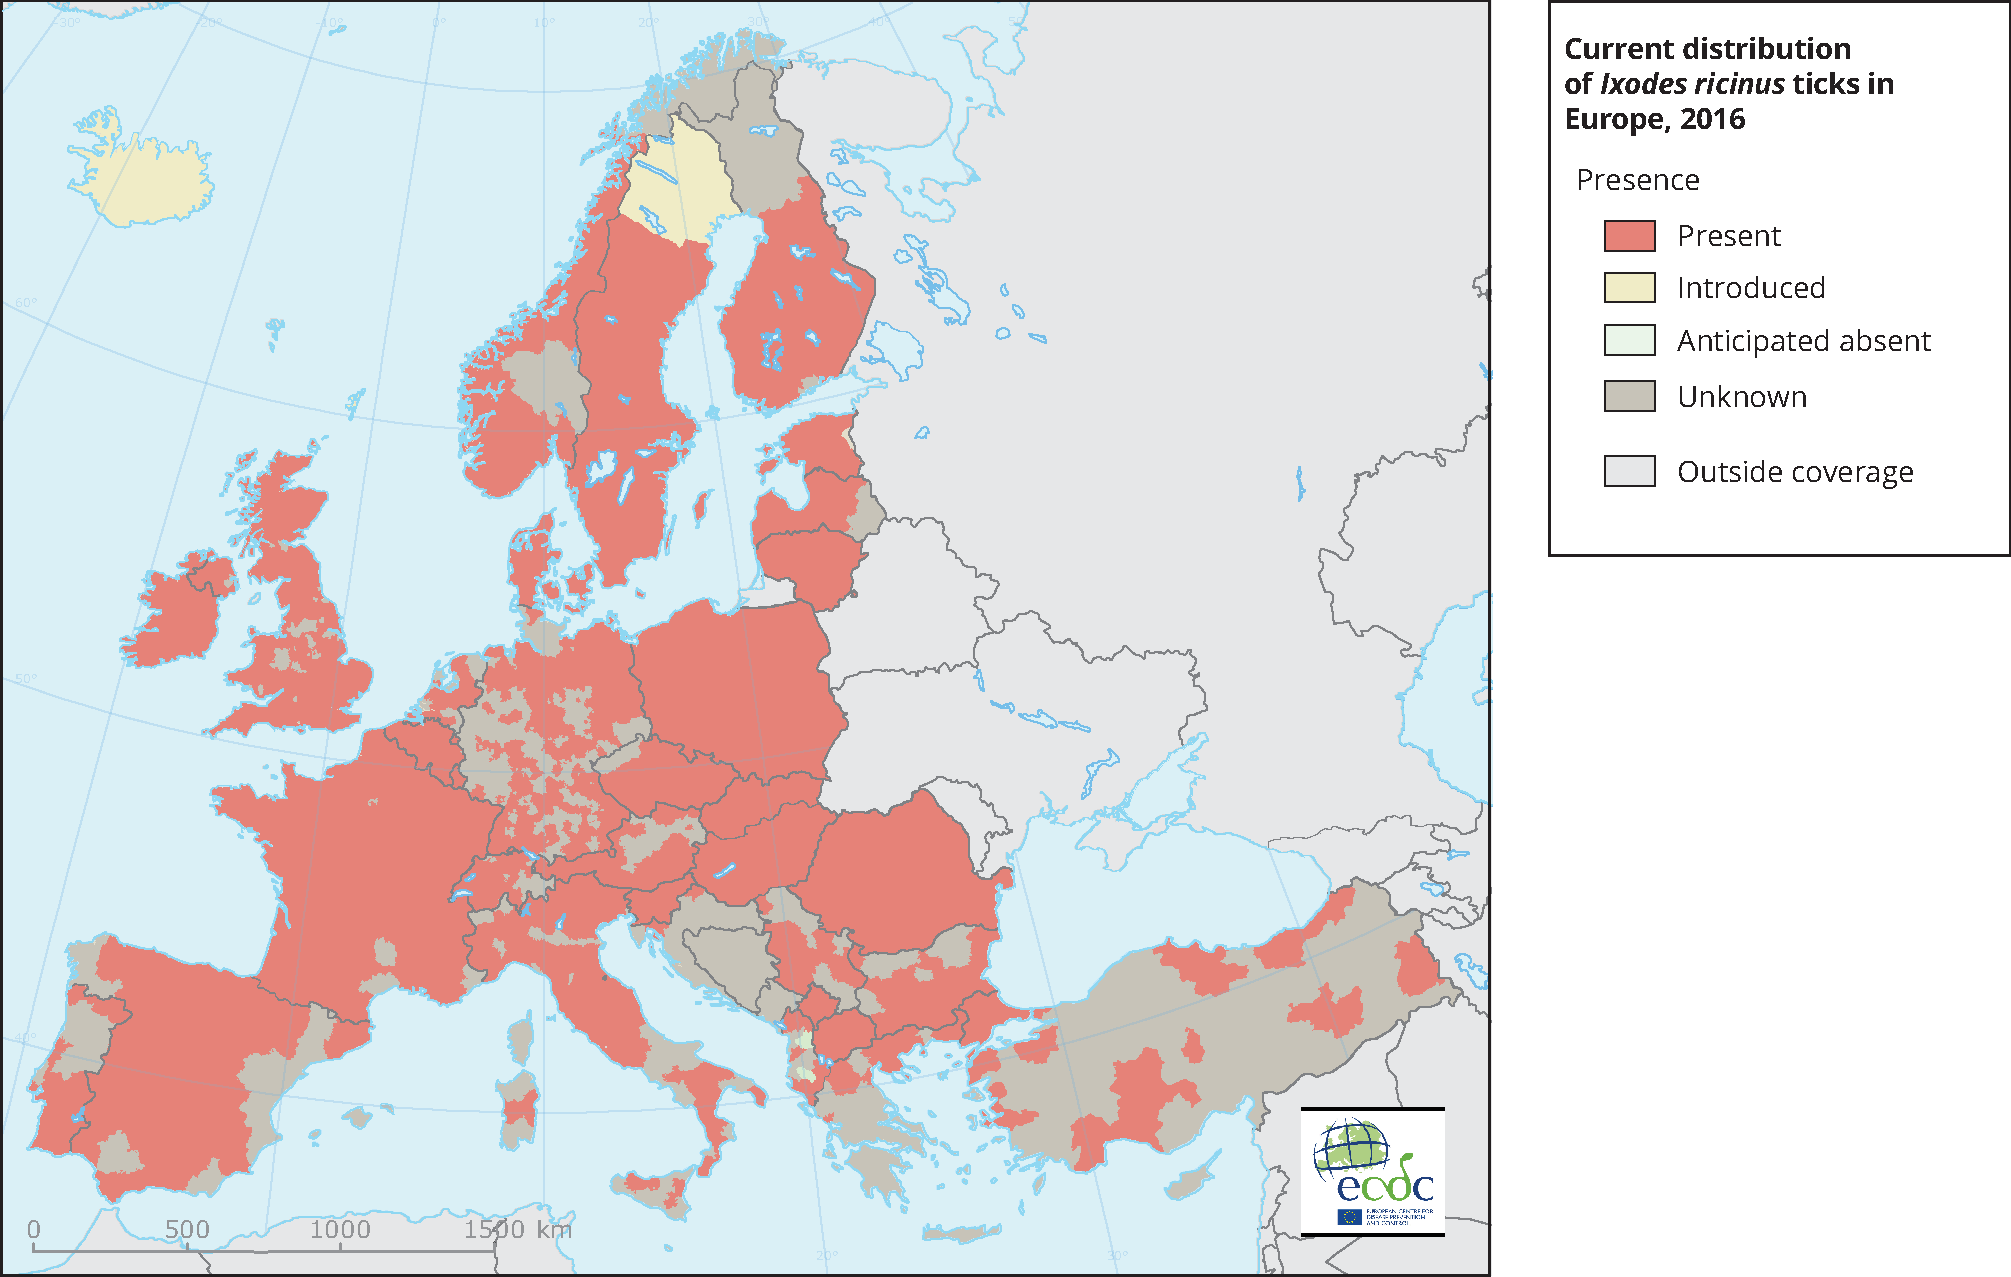 Current European distribution of Ixodus ricinus ticks